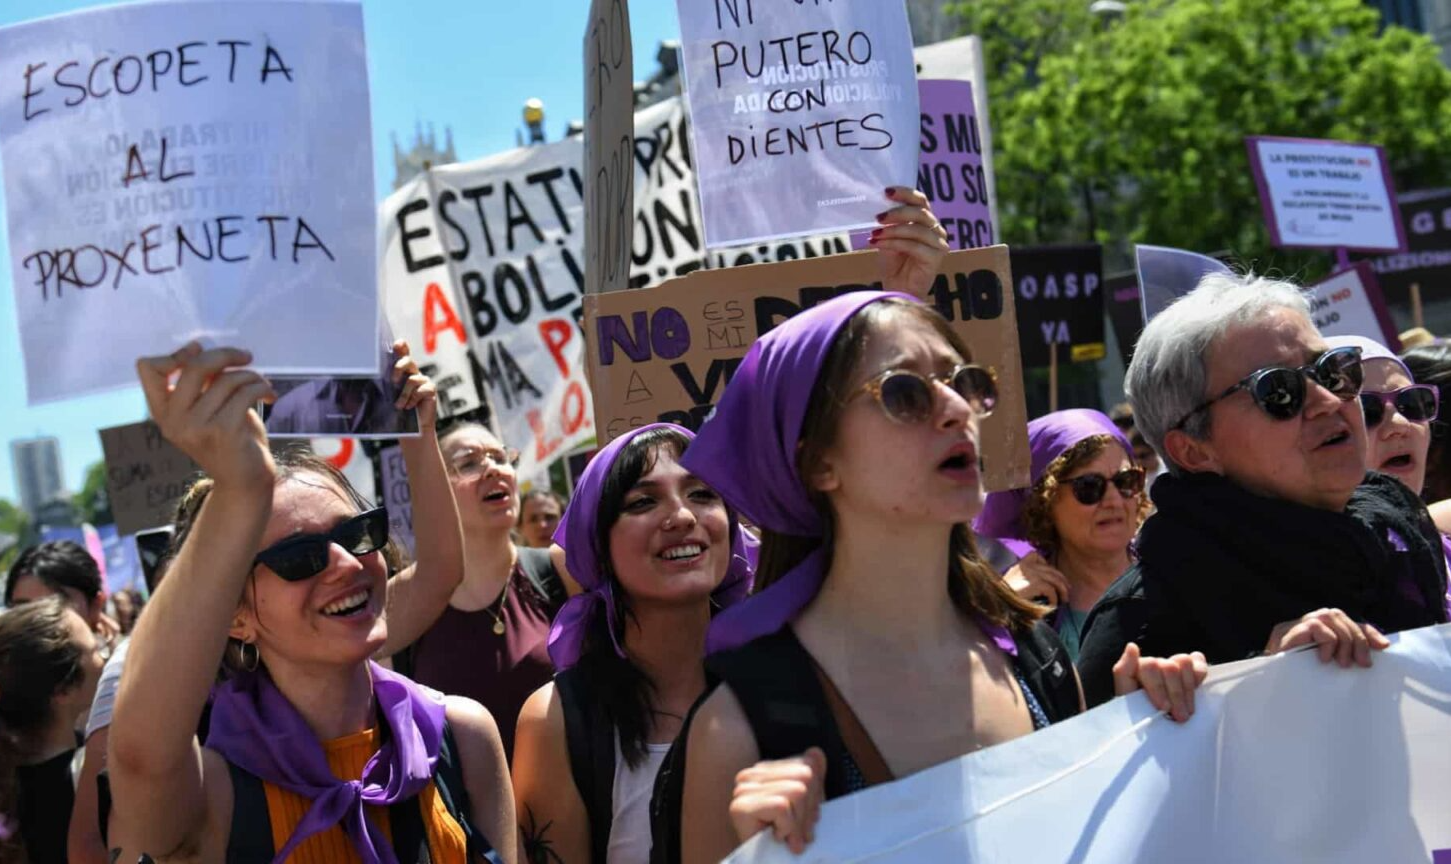 Segundo governo espanhol, mais de 90% das mulheres que exercem a prostituição o fazem obrigadas; profissionais, em contrapartida, discordam